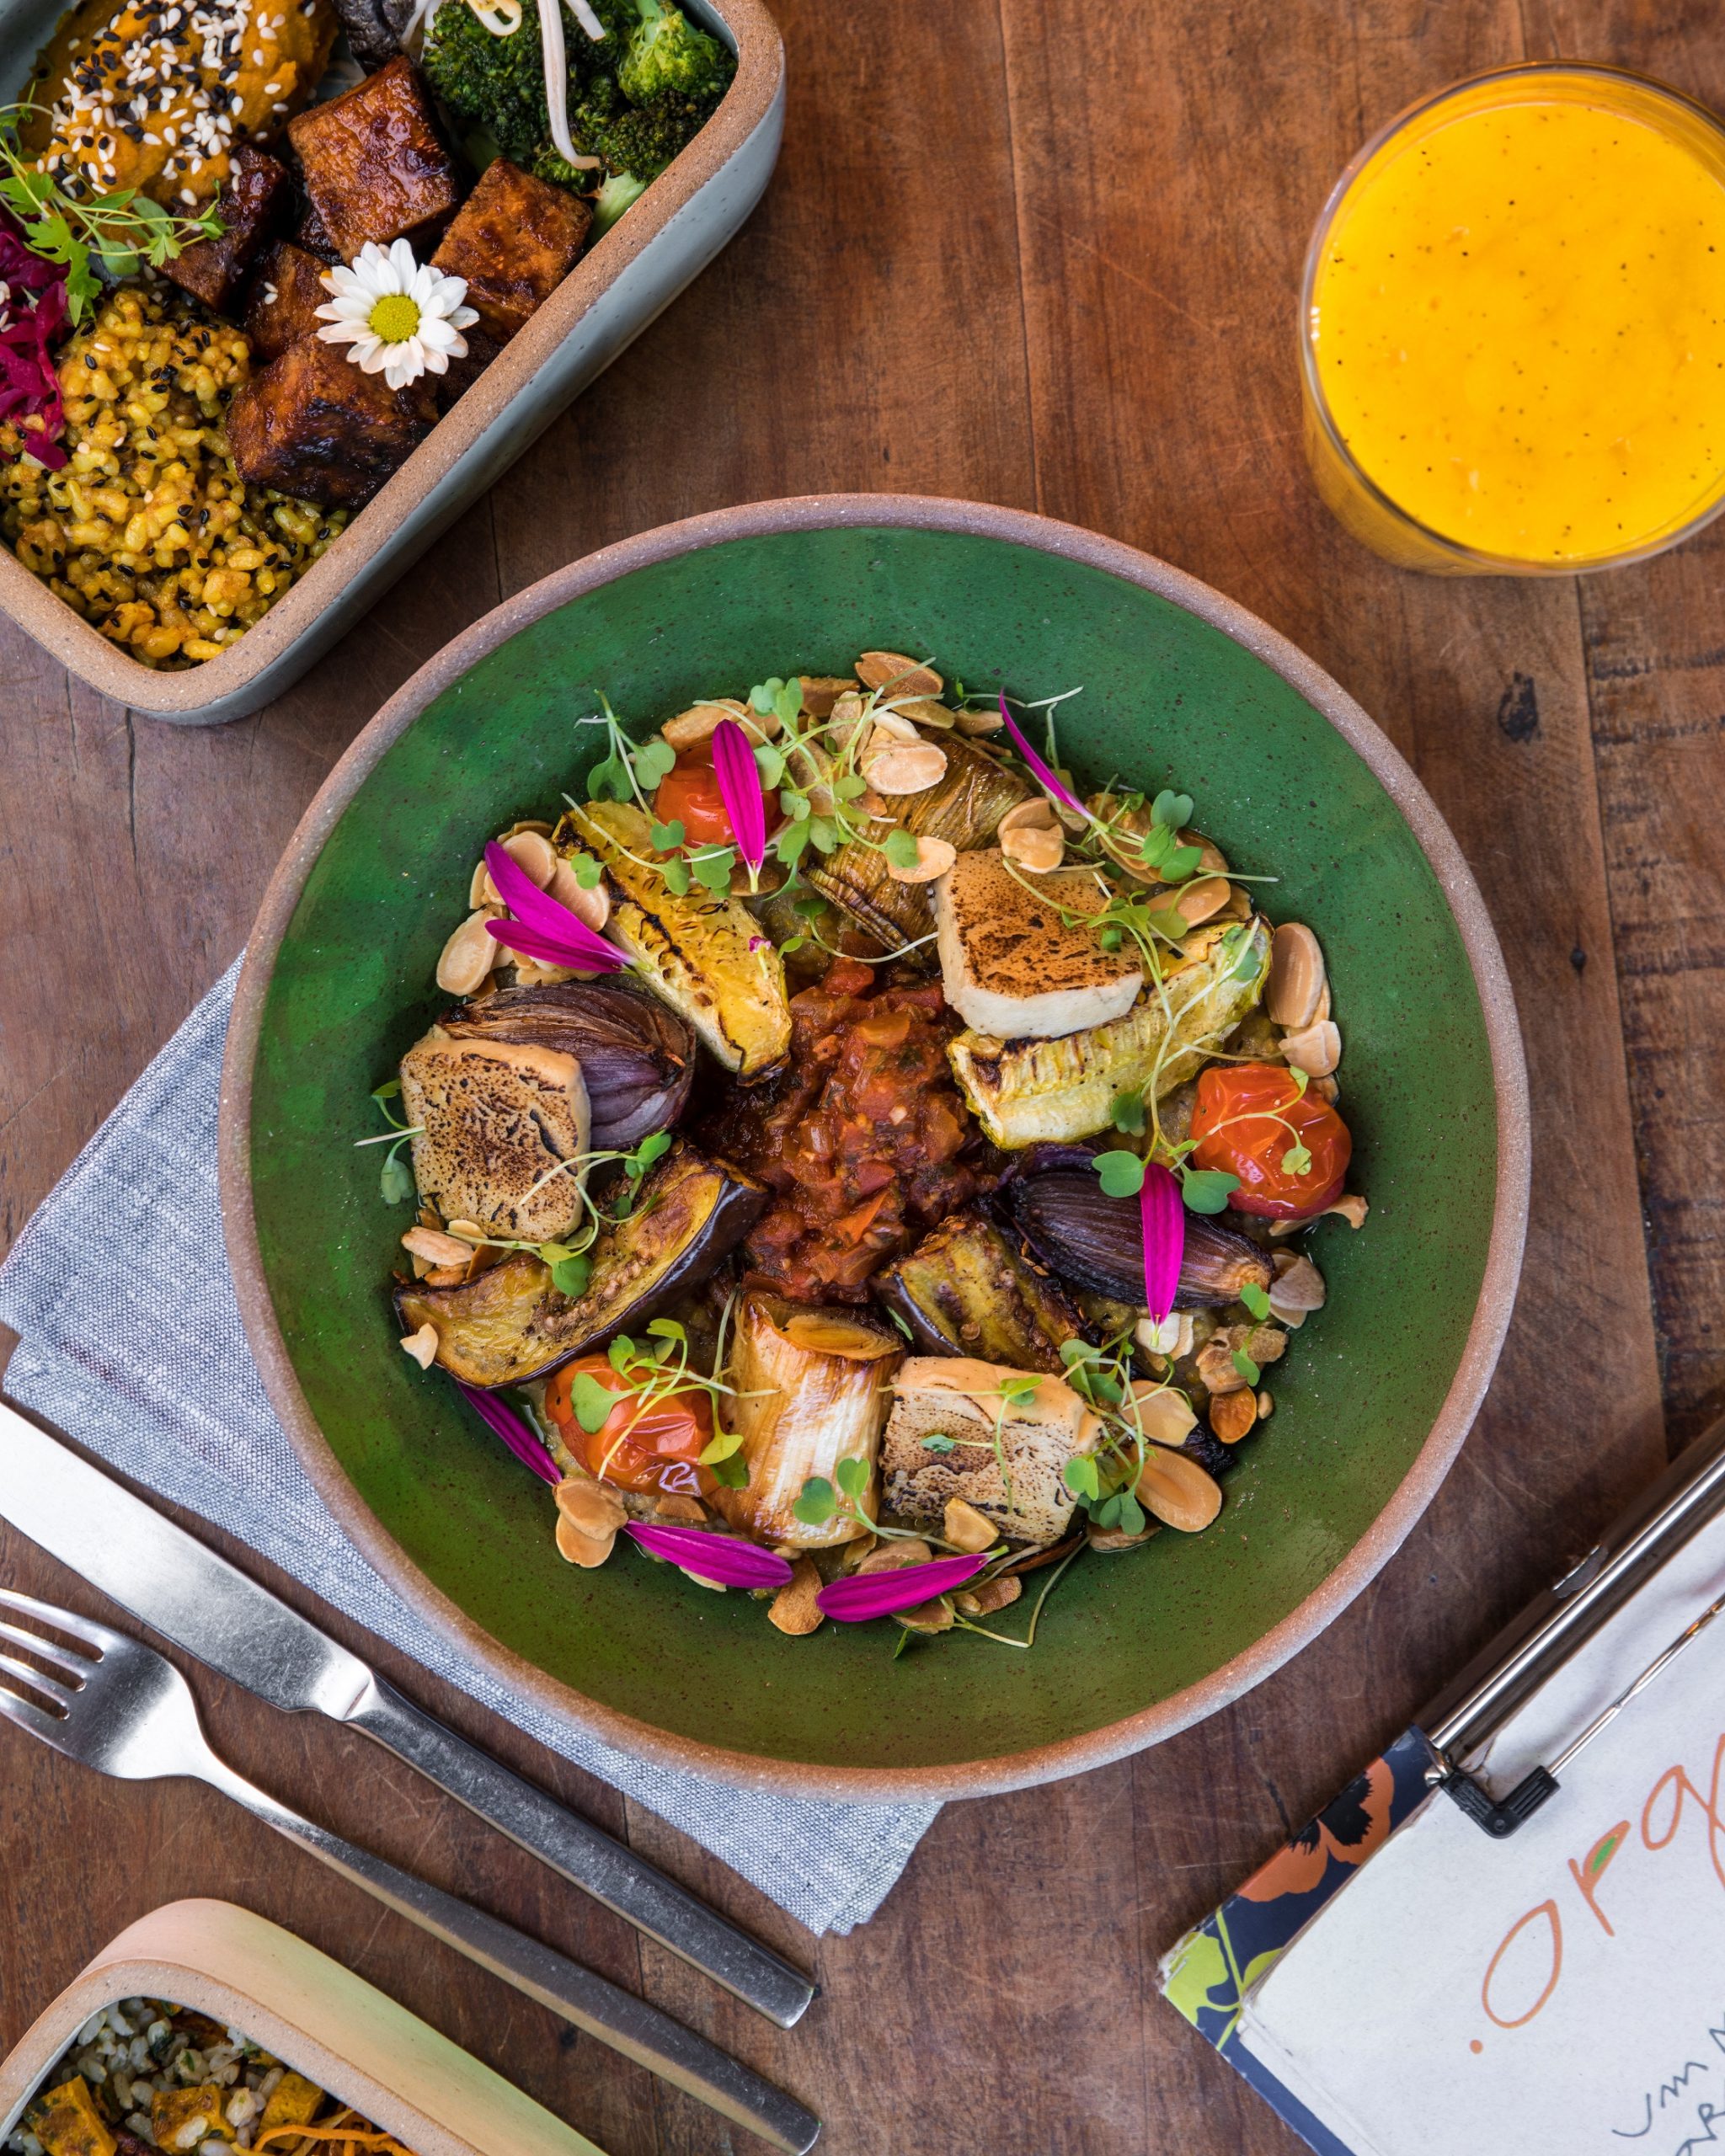 Confira um roteiro pelos restaurantes do Rio, SP e Salvador com pratos vegetarianos e veganos para o Dia Mundial Sem Carne